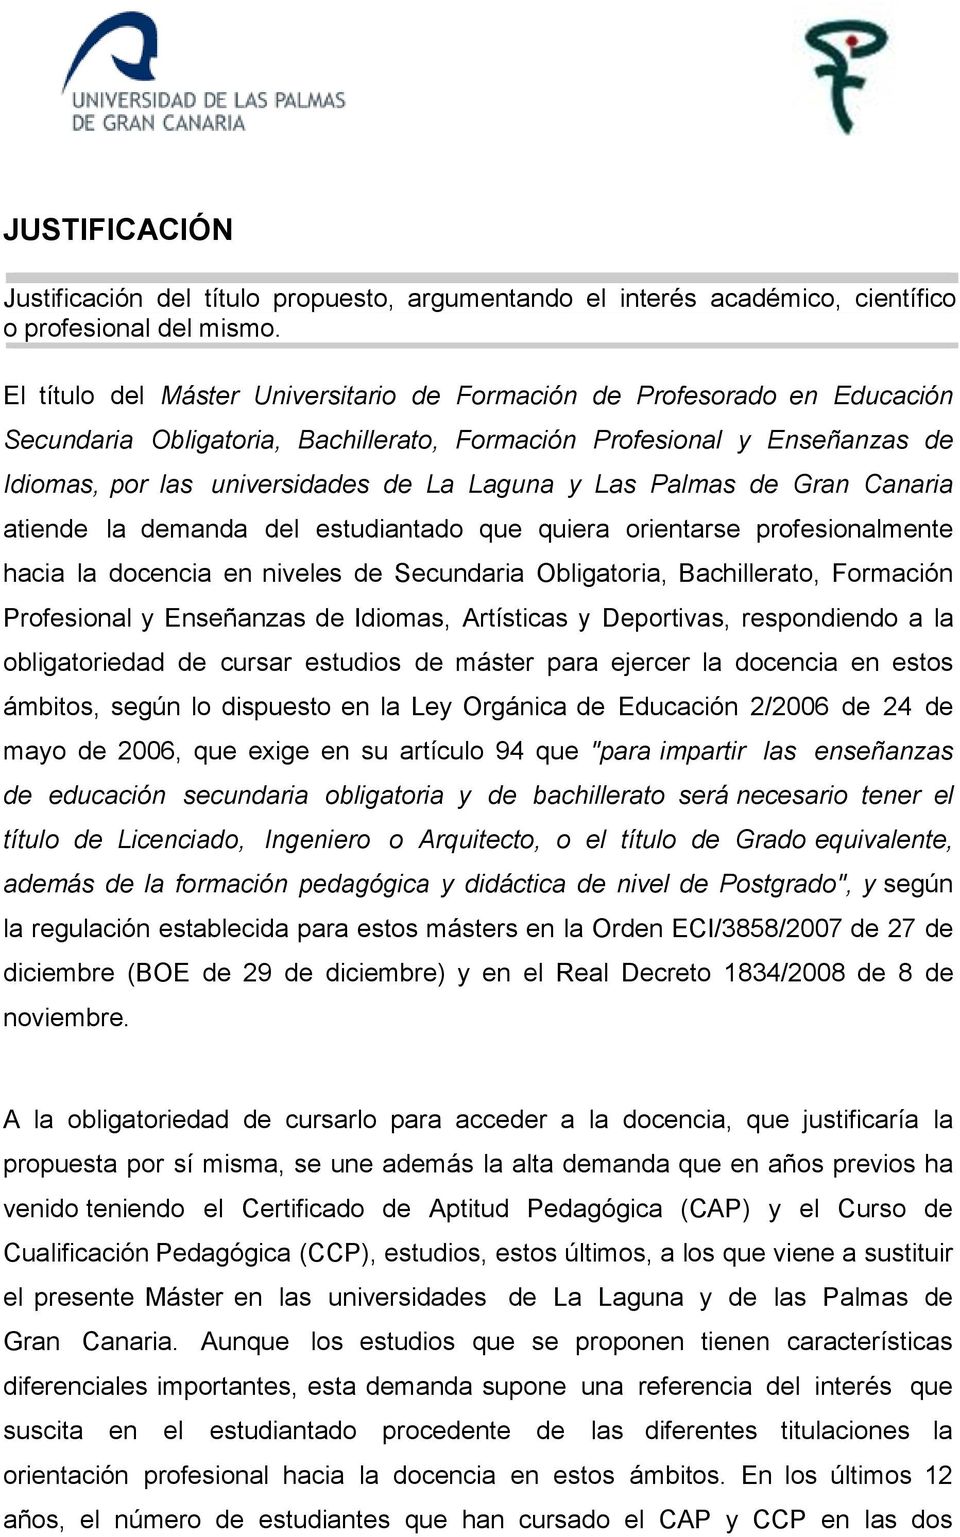 Las Palmas de Gran Canaria atiende la demanda del estudiantado que quiera orientarse profesionalmente hacia la docencia en niveles de Secundaria Obligatoria, Bachillerato, Formación Profesional y